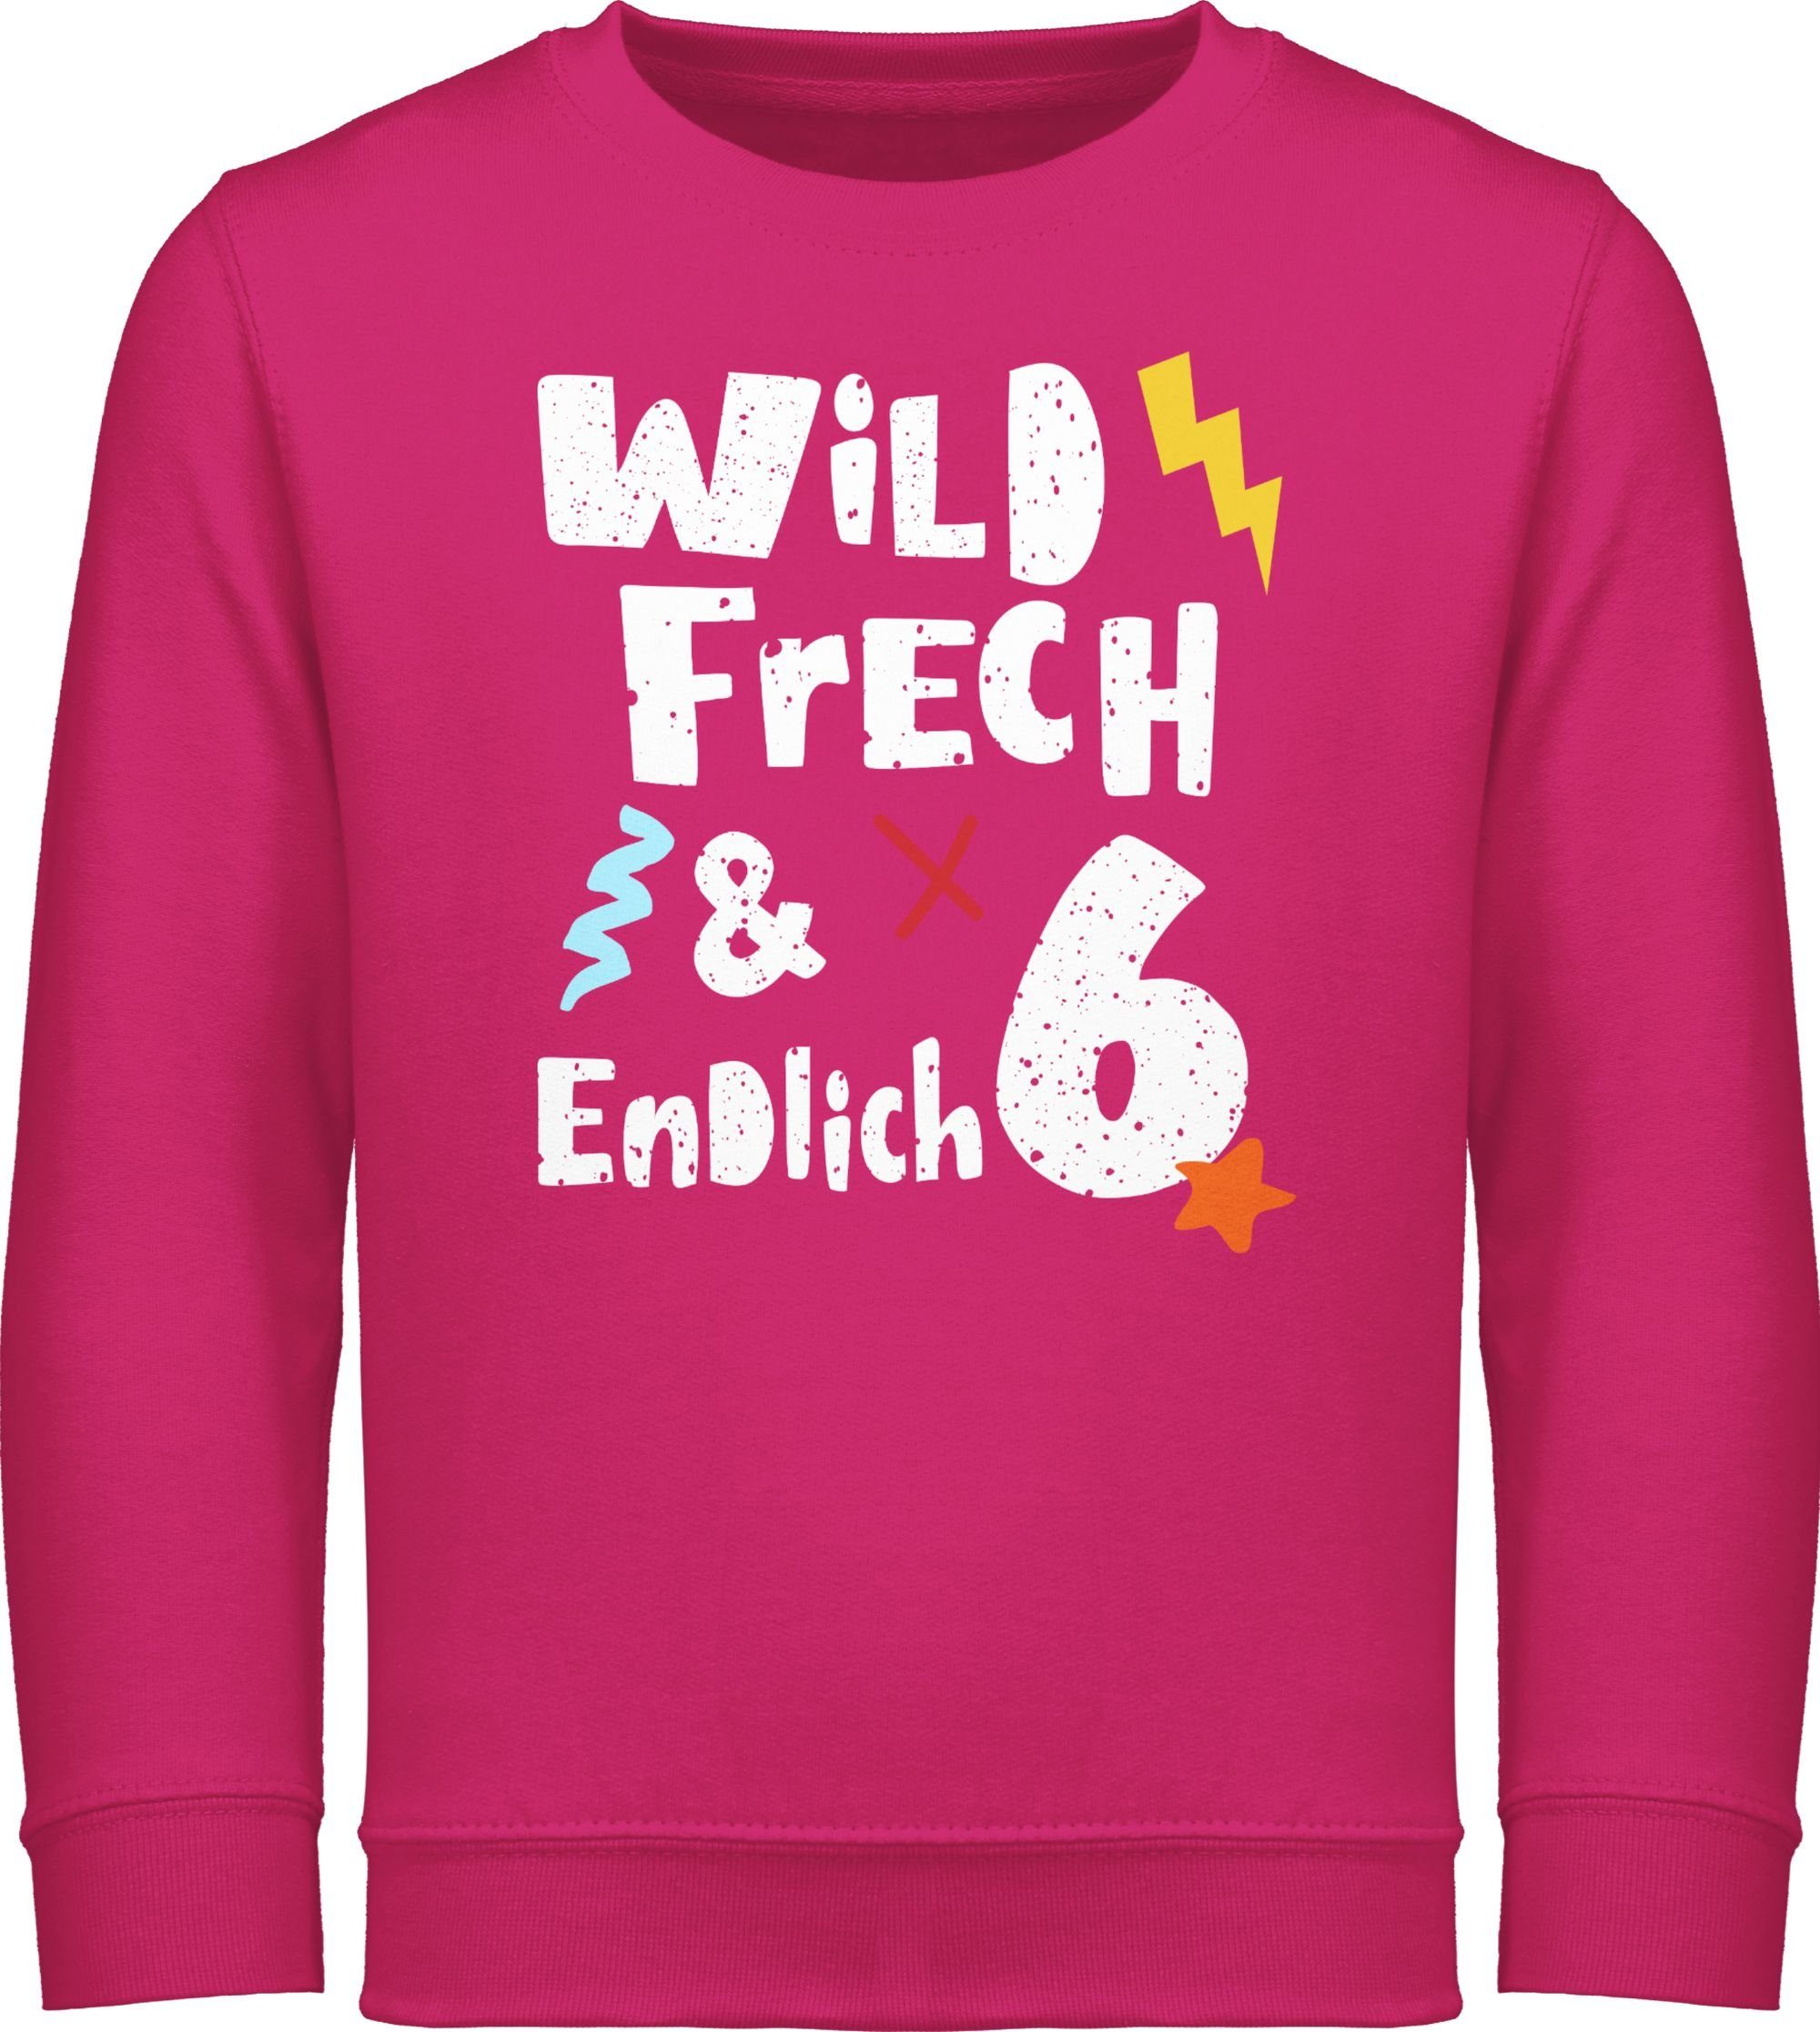 6. Fuchsia endlich Geburtstag Wunderbar Shirtracer frech - Jahre 6 Sweatshirt Wild und 2 Sechs